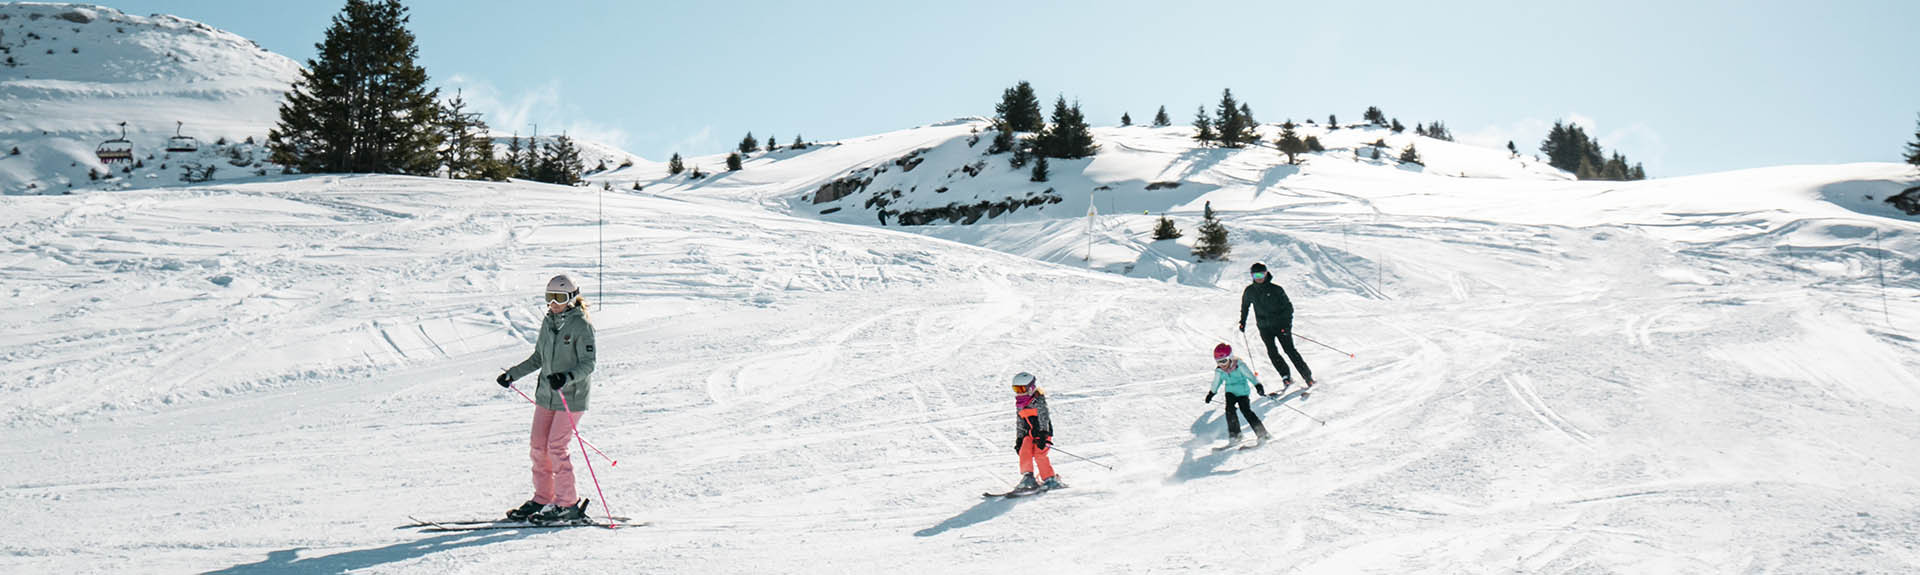 Skiën & glijsporten met het gezin